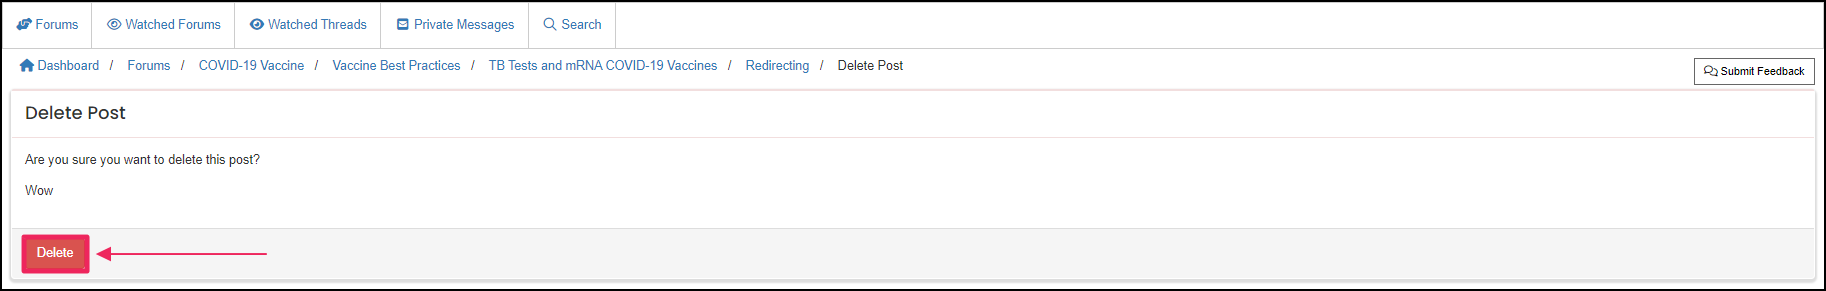 Image shows delete button